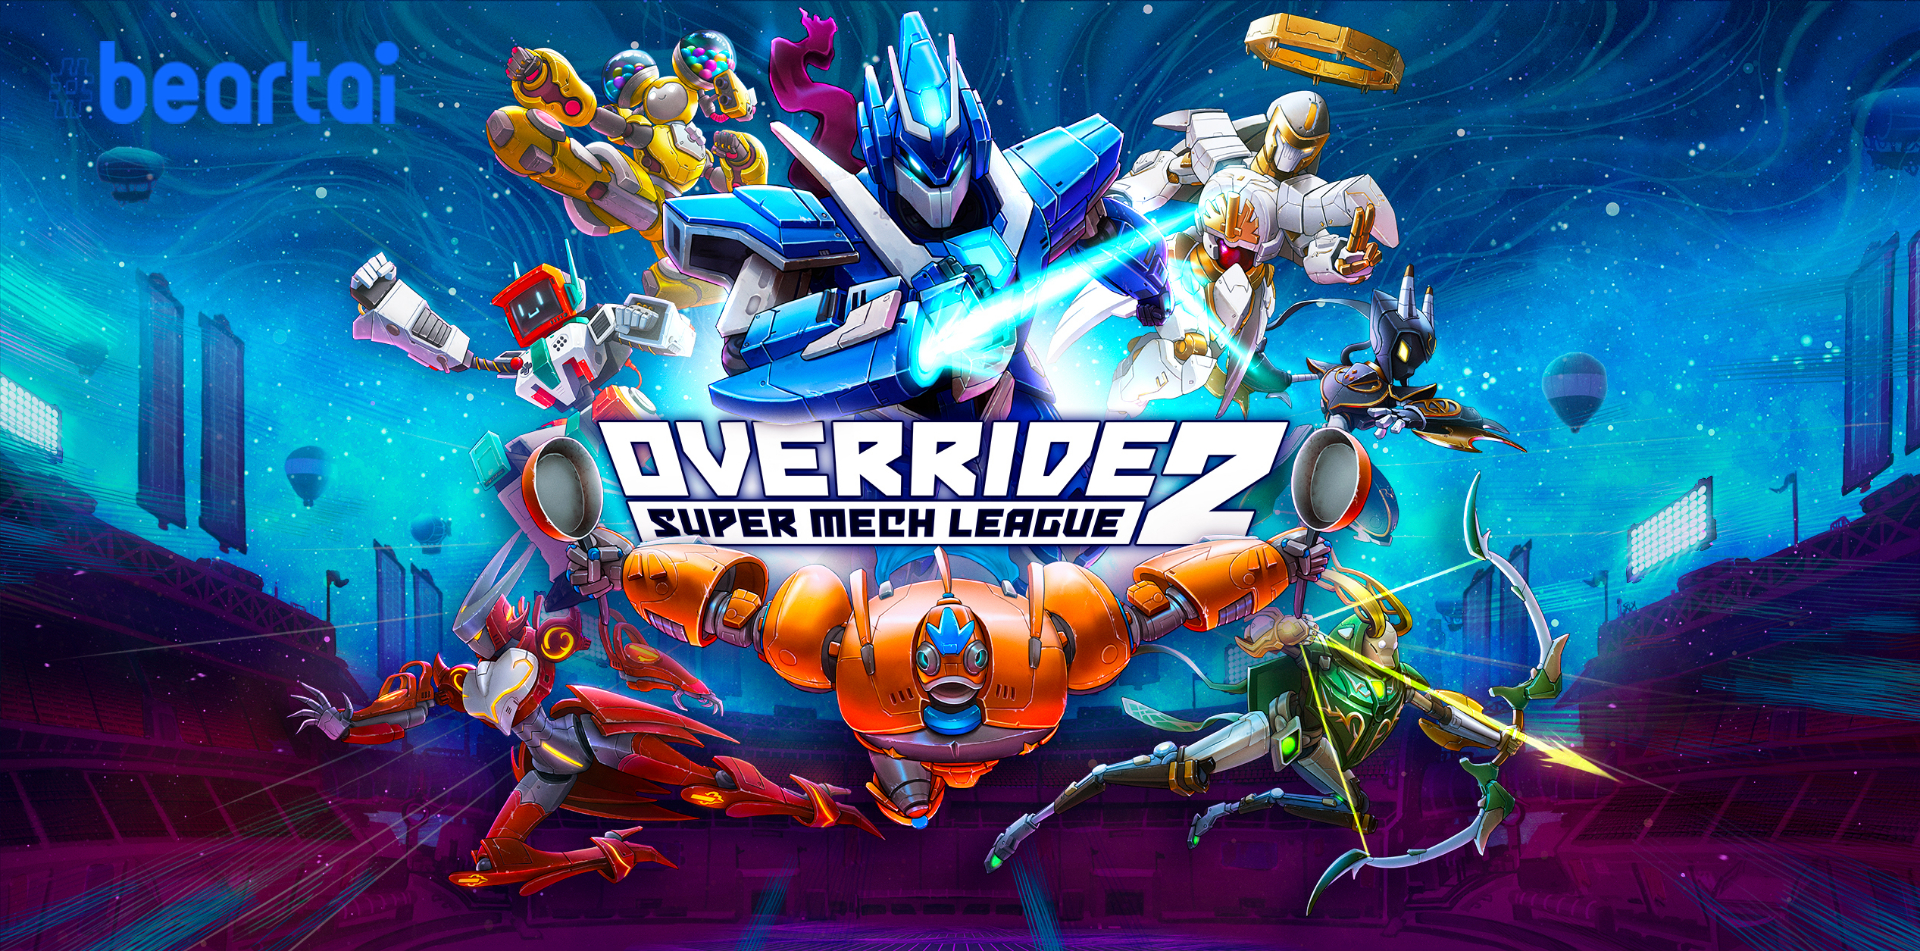 ศึกหุ่นยนต์สะท้านเมือง Override 2: Super Mech League